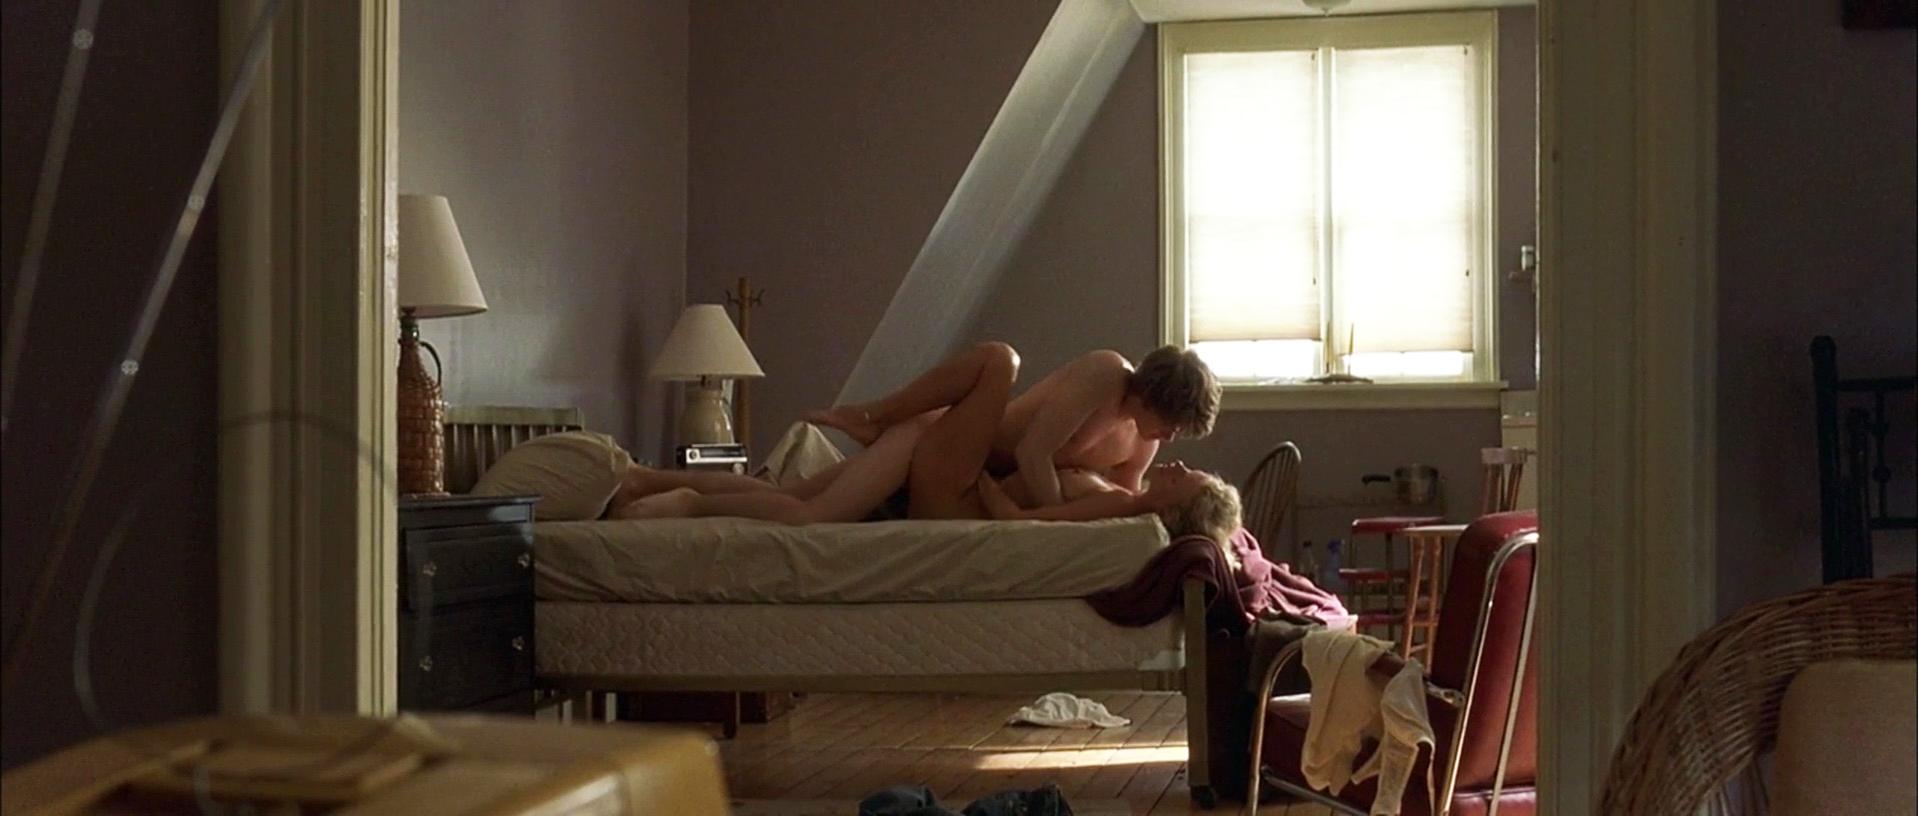 Ким Бейсингер, Дверь в полу, голая, секси, сцена, видео. 